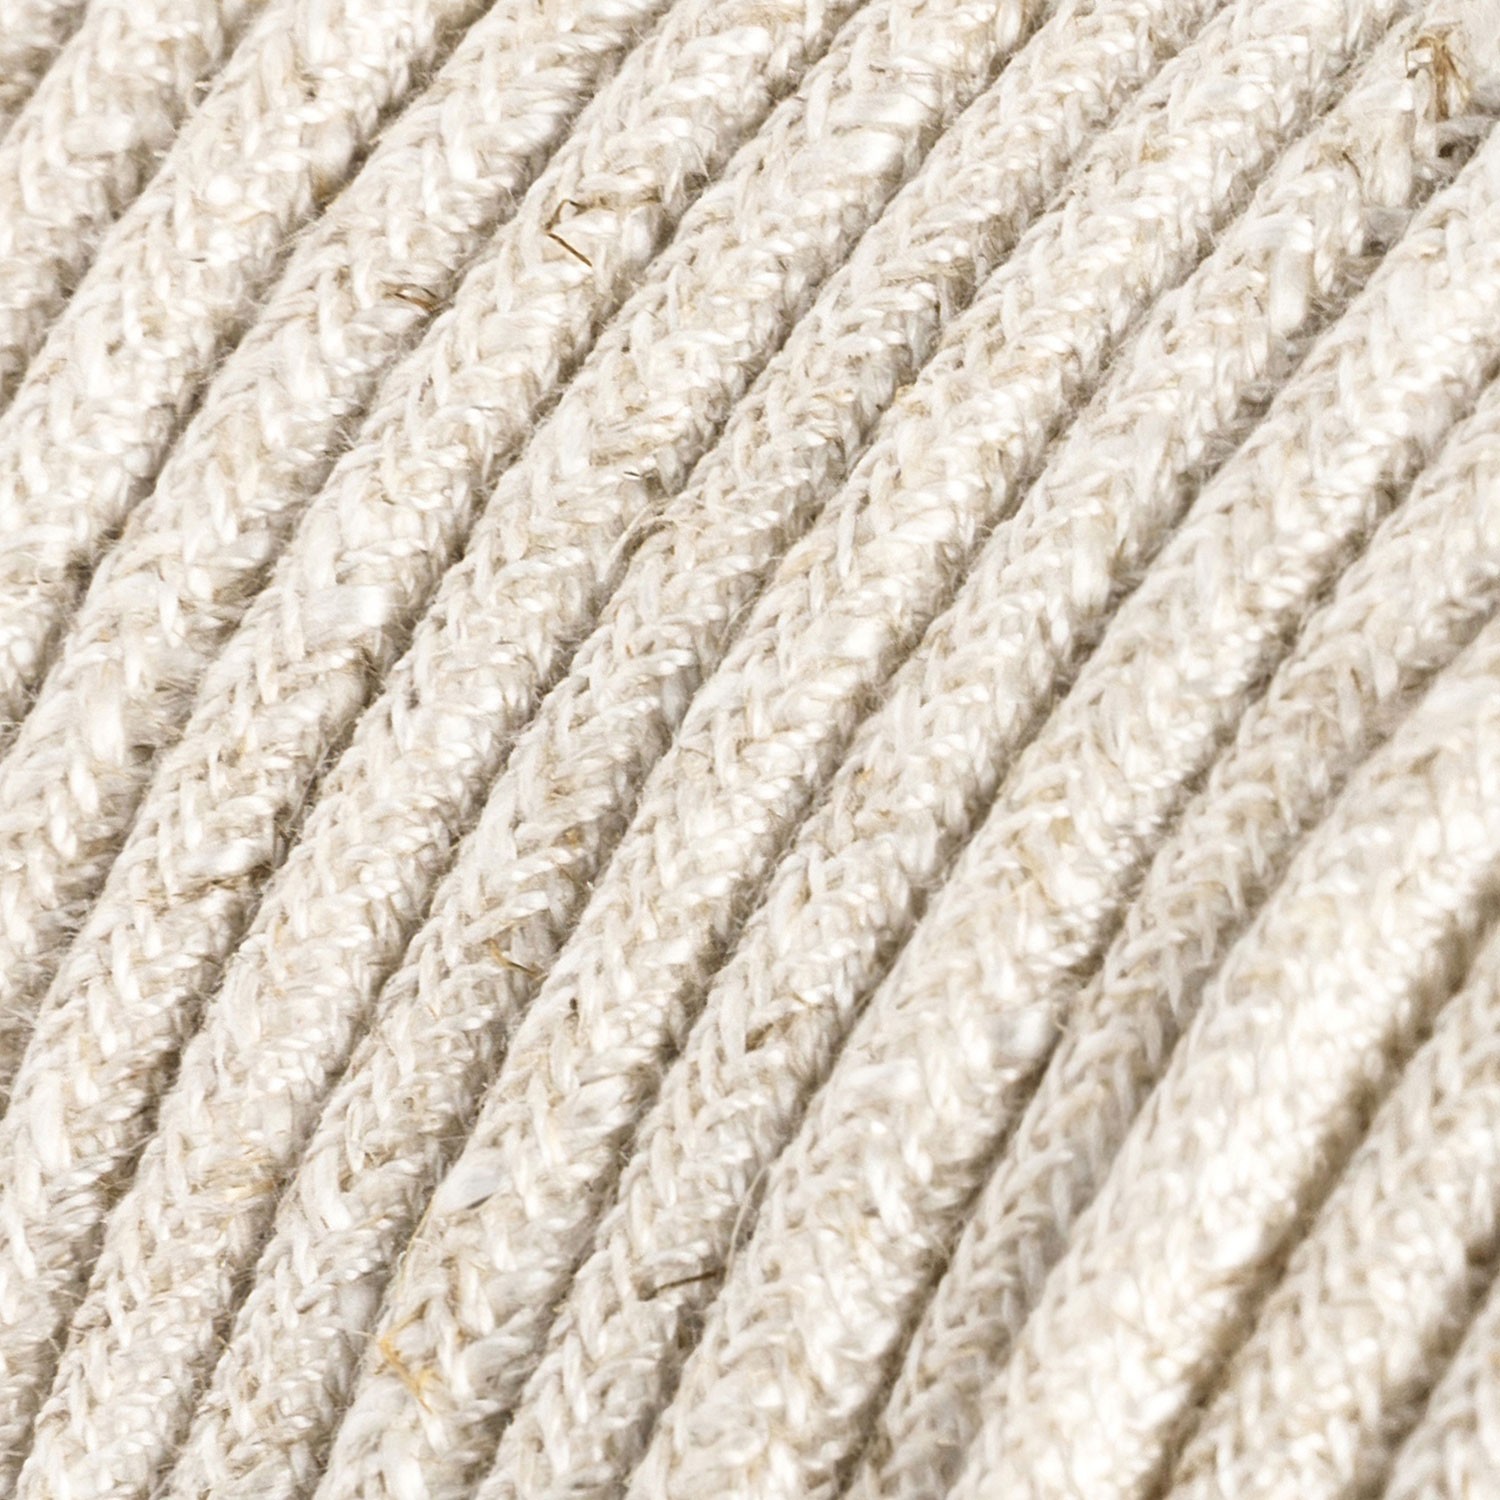 Câble électrique Ultra Soft en silicone recouvert de lin Blanc mélangé - RN01 rond 2x0,75mm